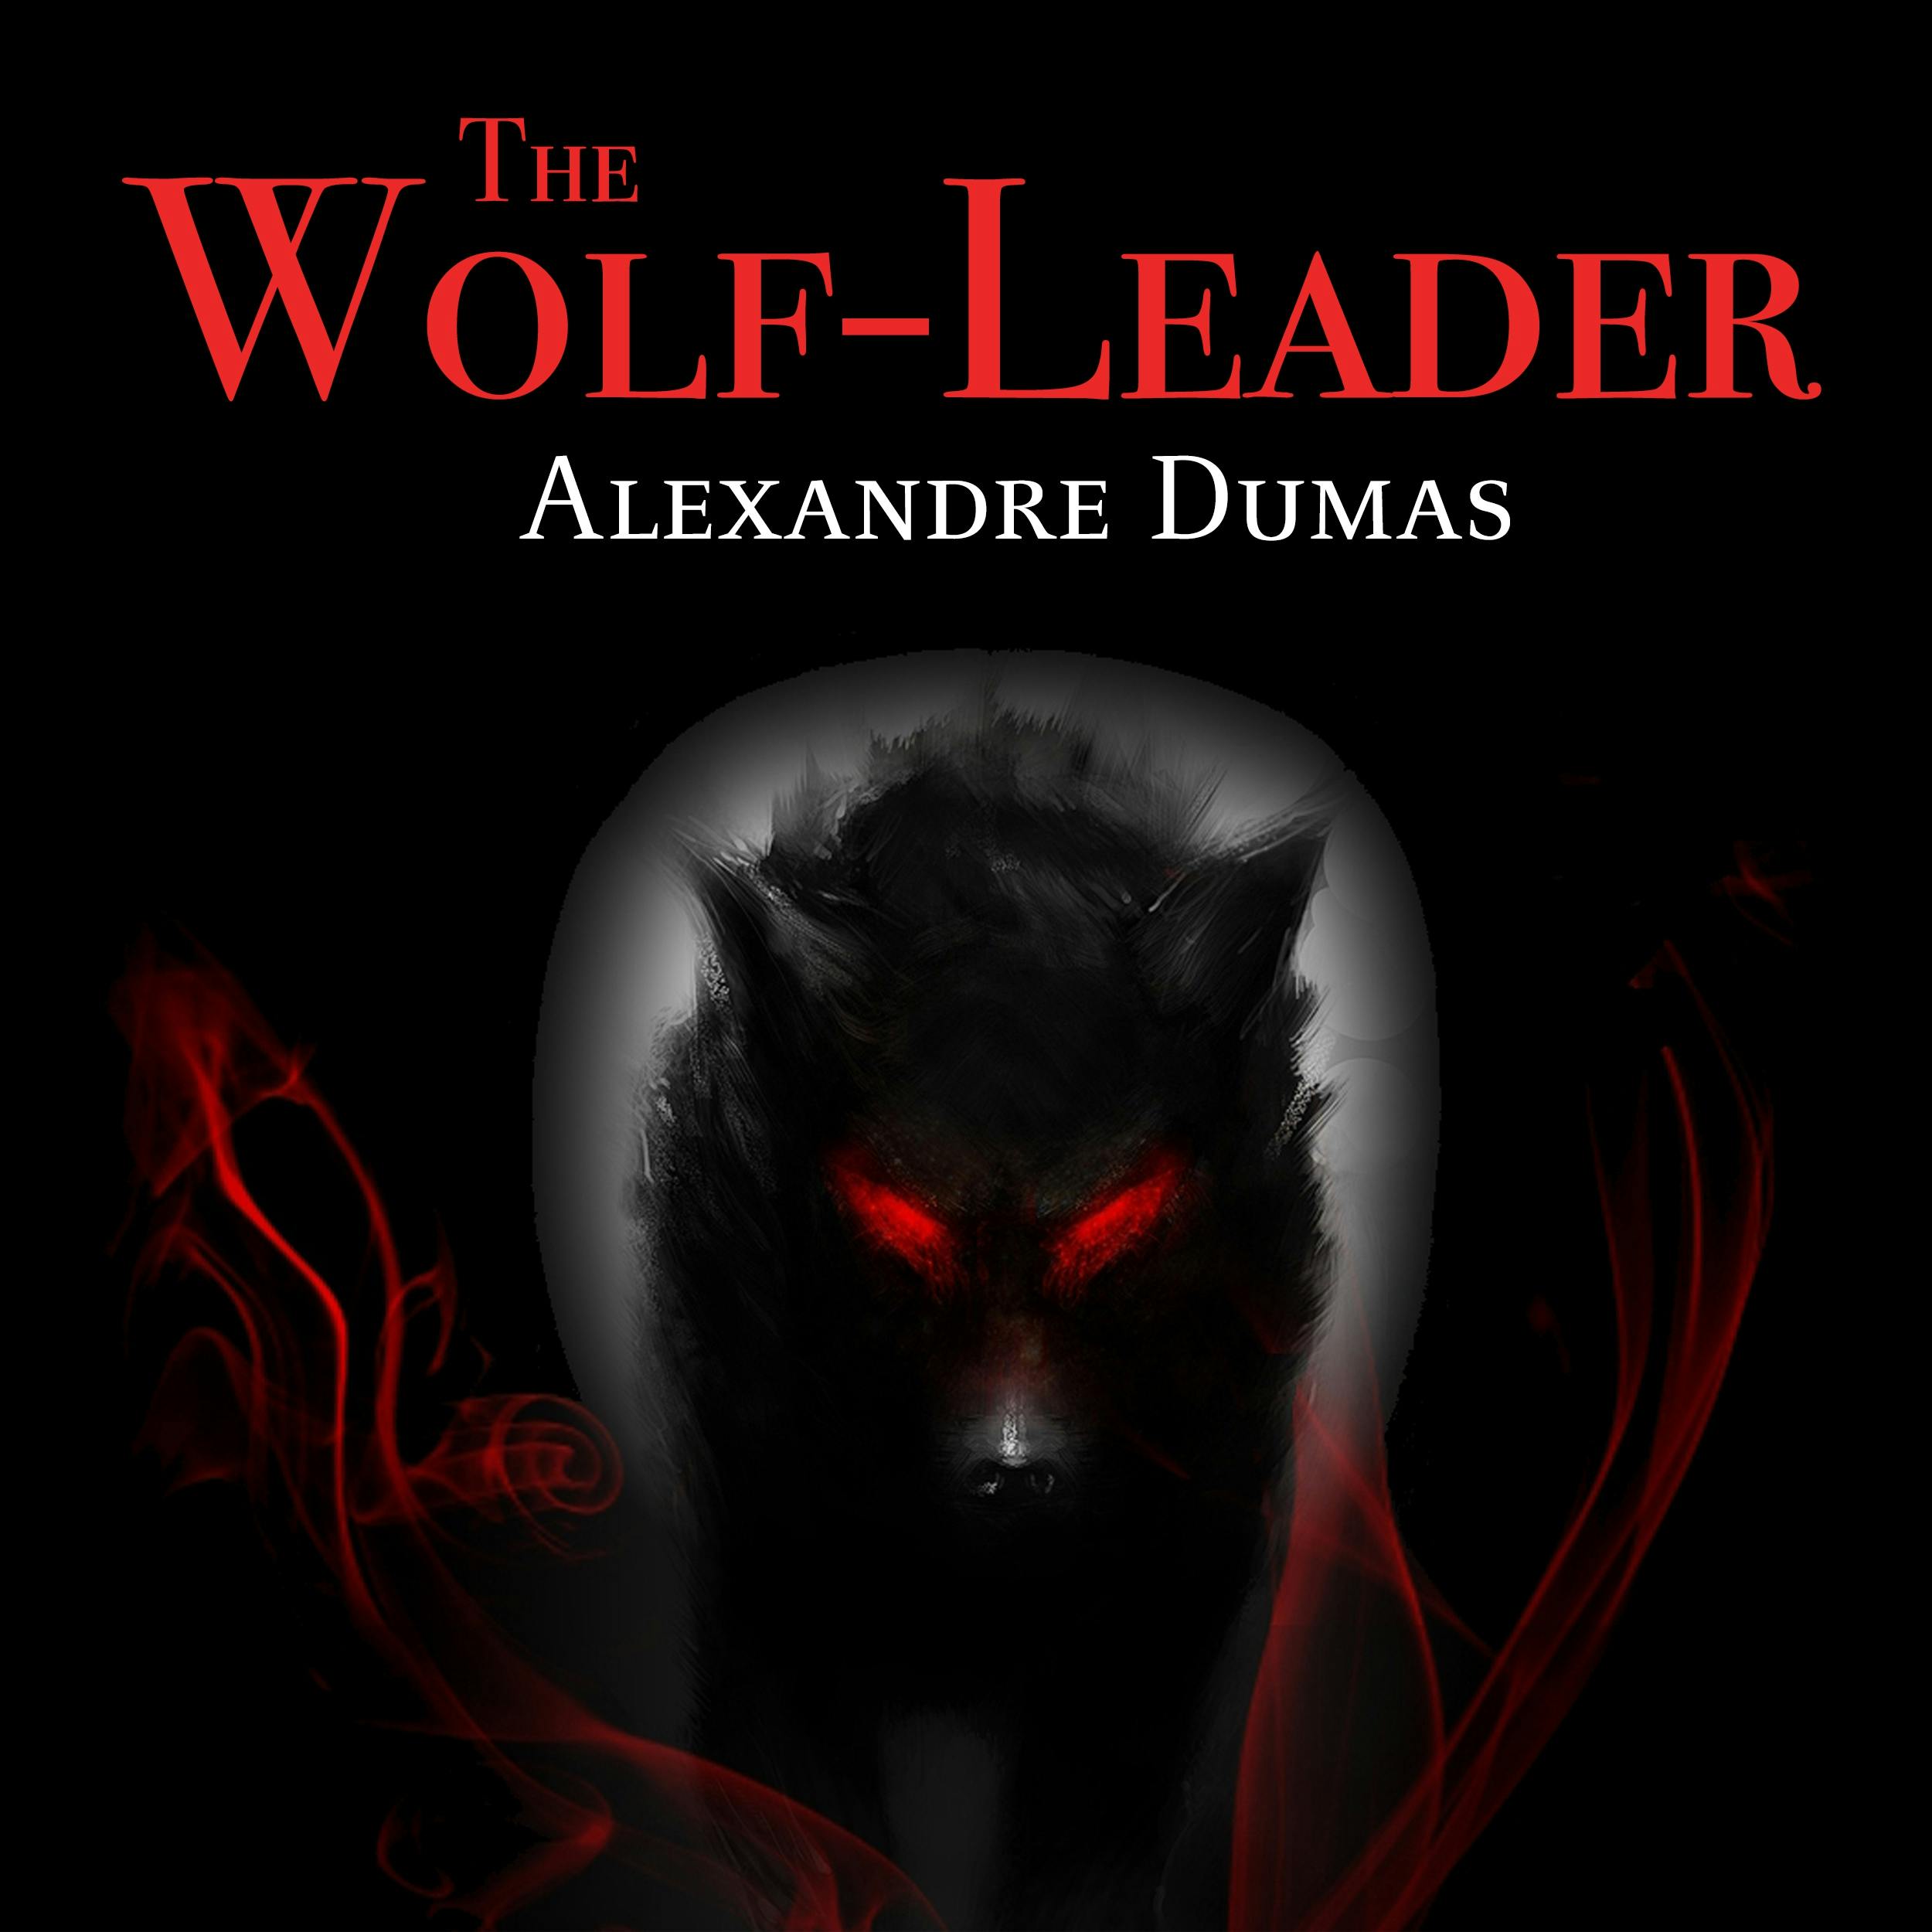 The Wolf-Leader - Alexandre Dumas